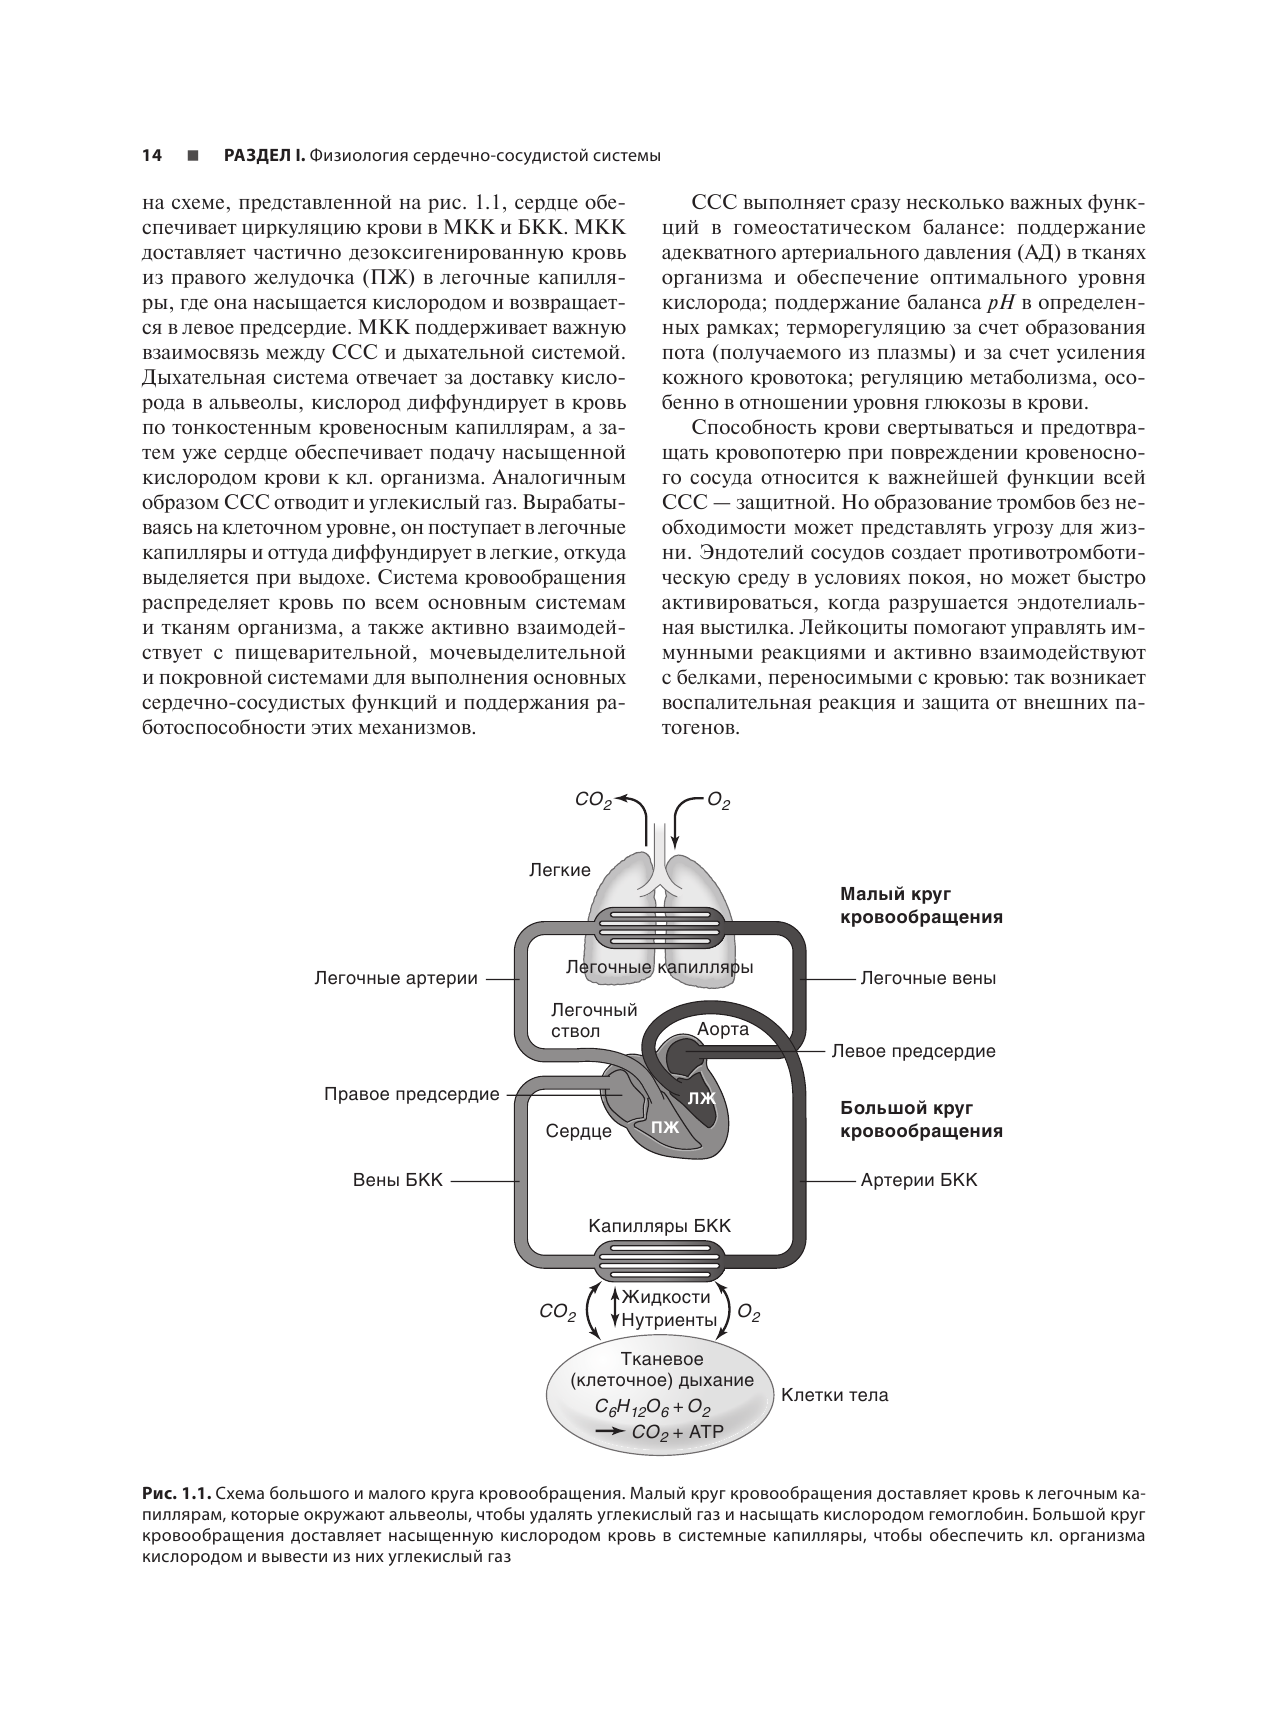 Анатомия и физиология сердечно-сосудистой системы - фото №17